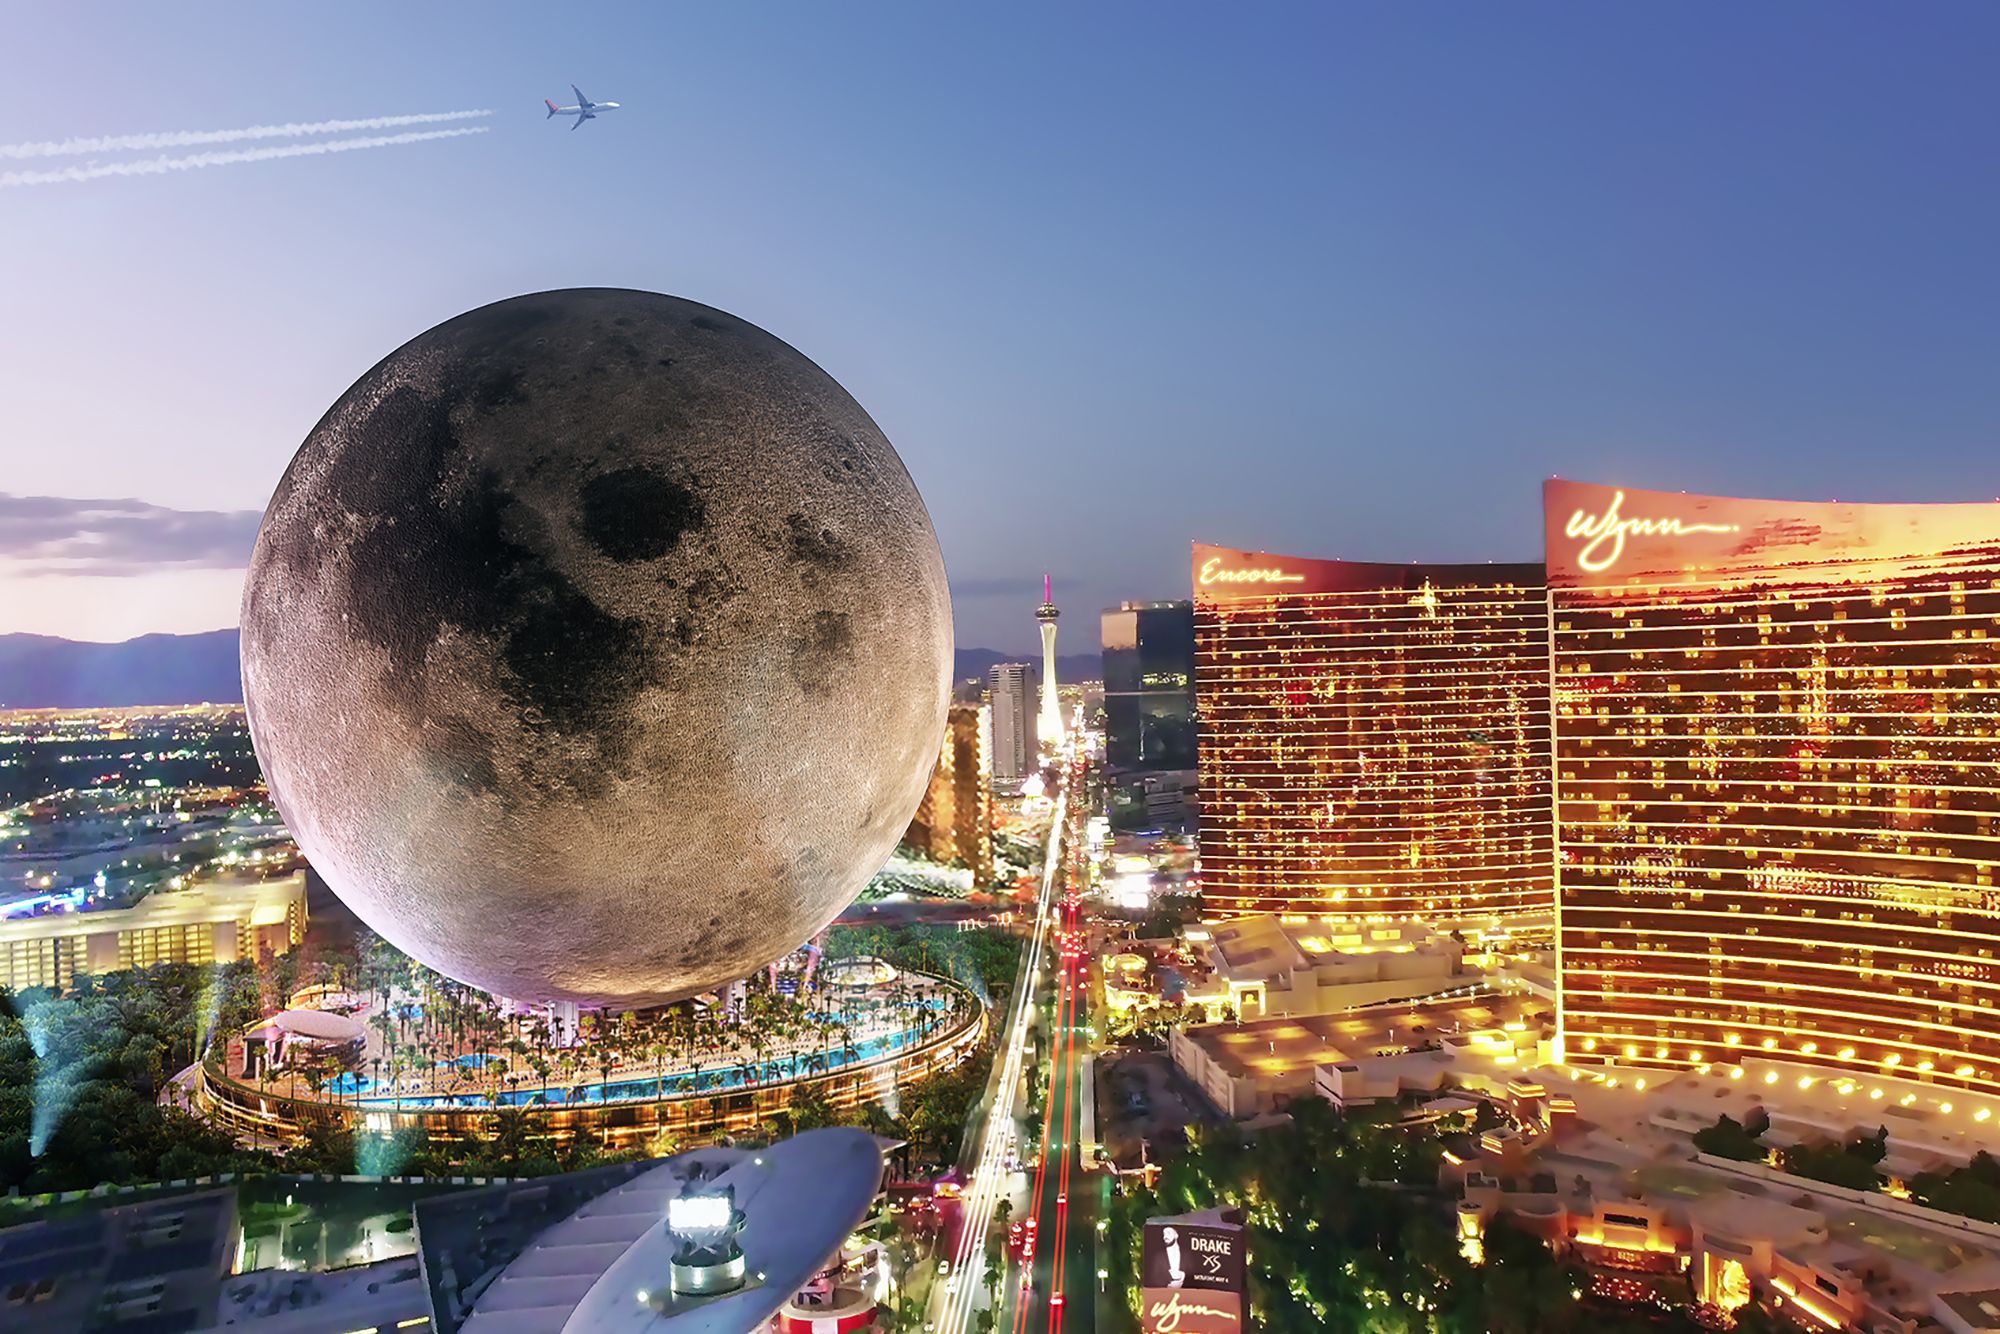 Este resort terá uma réplica da Lua, em tamanho real!